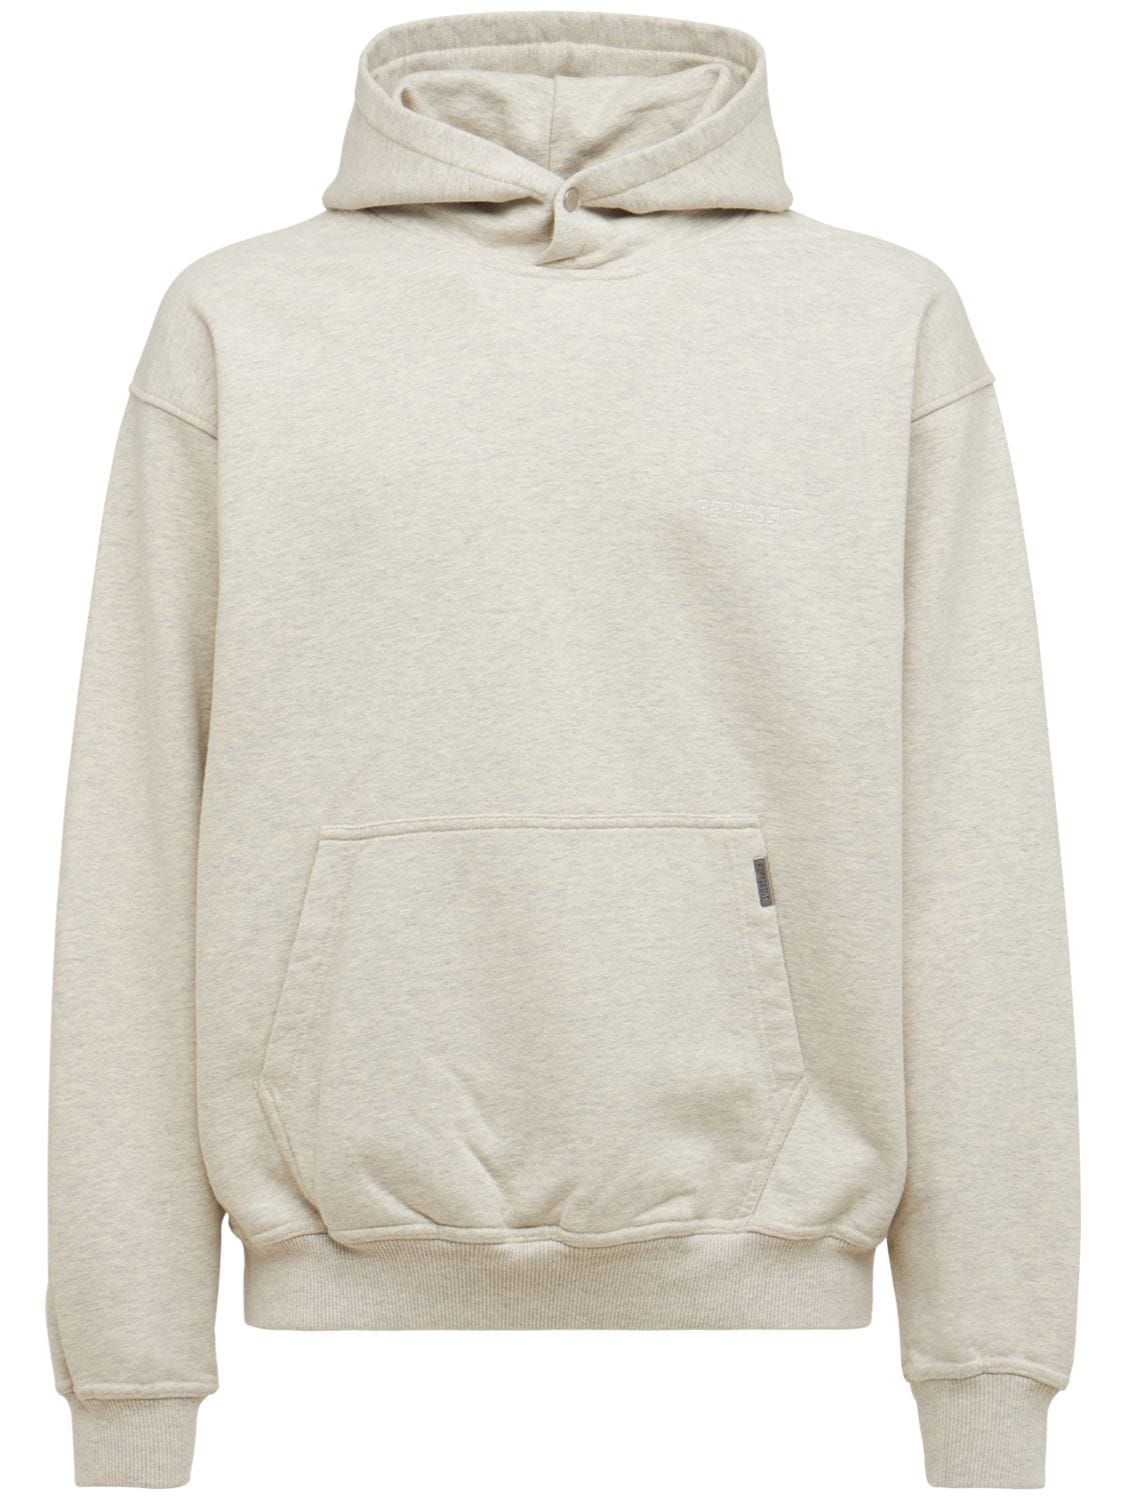 Represent - Blanks logo oversize cotton hoodie - Cream | Luisaviaroma